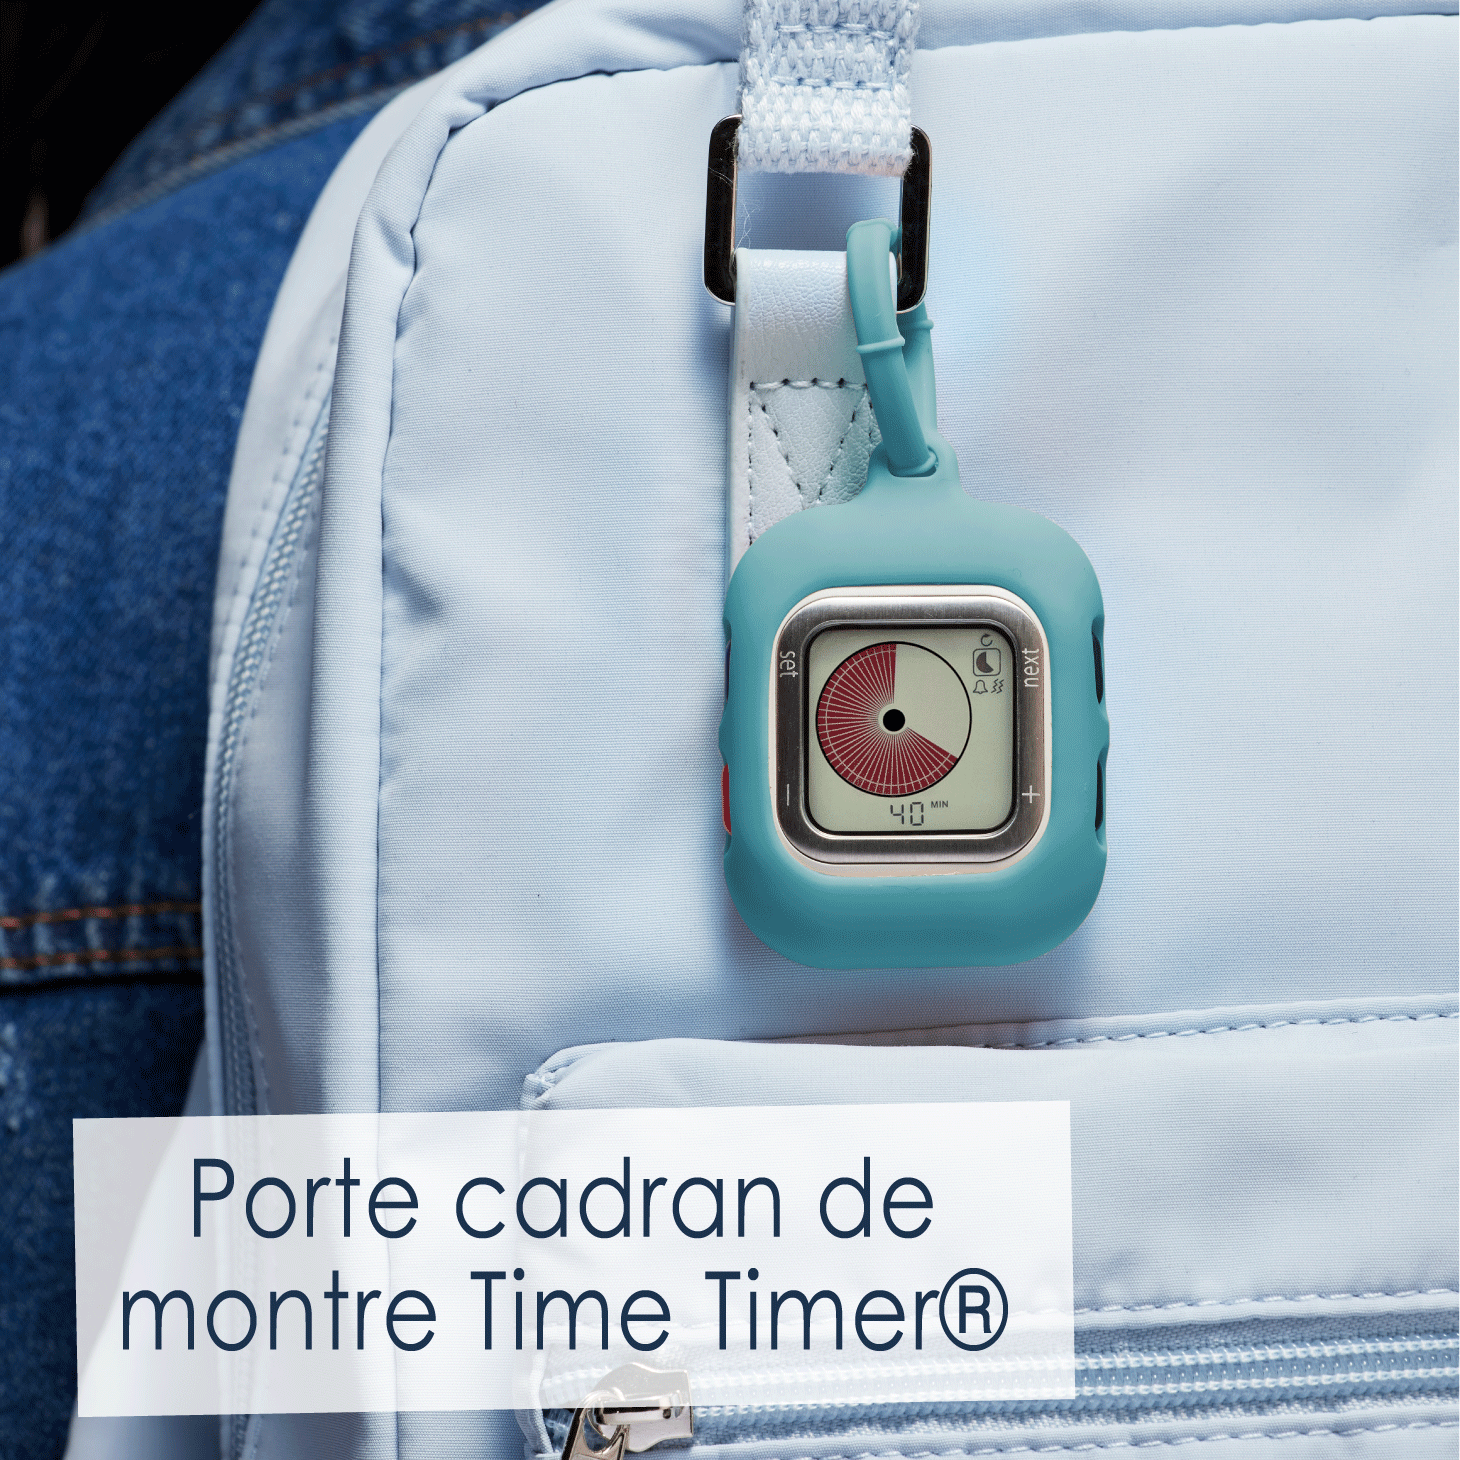 Porte cadran de montre Time Timer